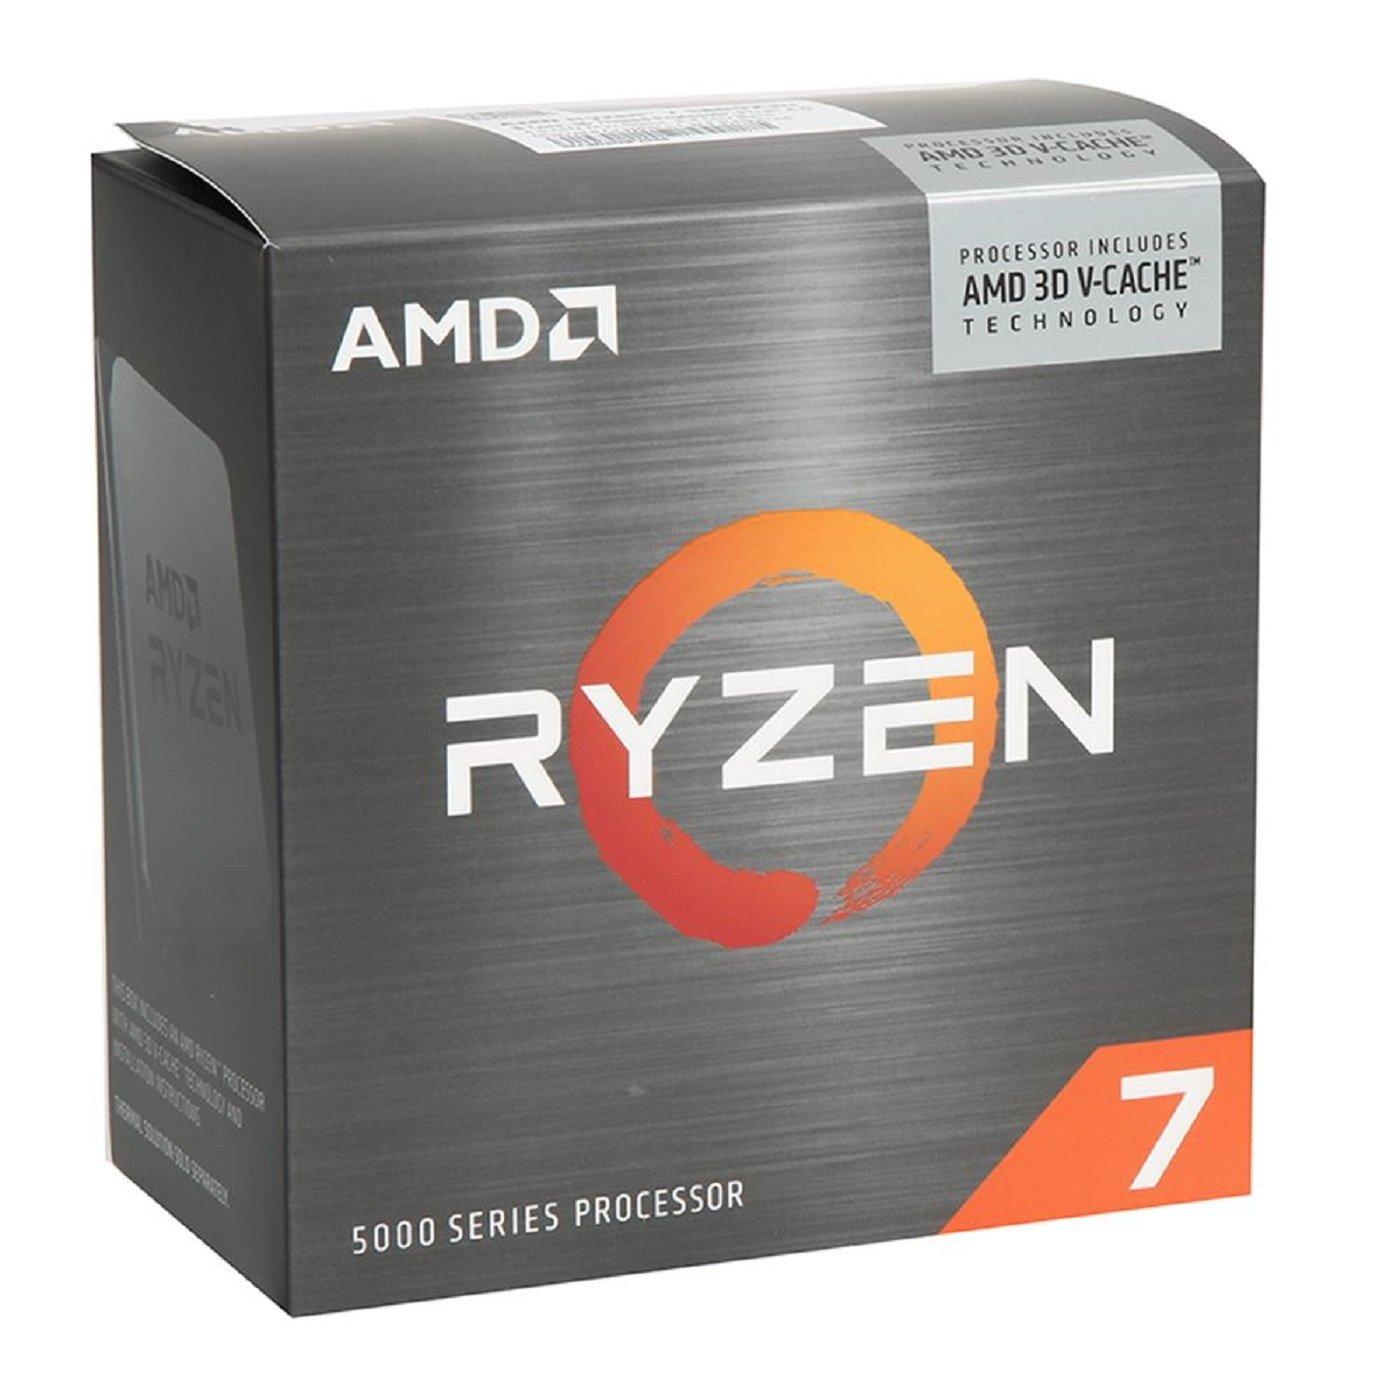 AMD Ryzen 7 5800X3D Processor AM4 to 16 GameStop 8-core Threads GHz up 4.5 